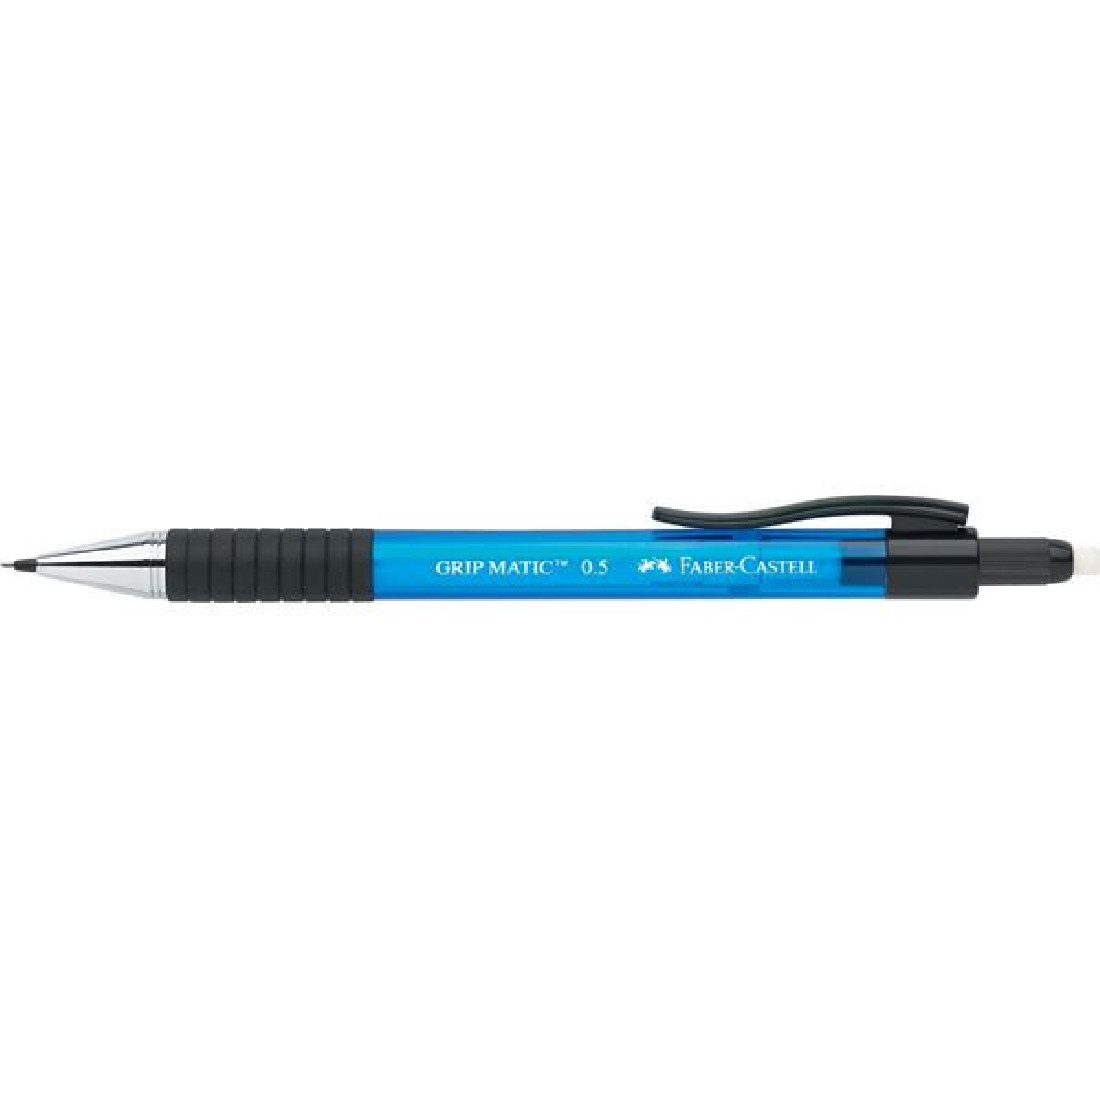 Faber Castell grip matic 137551 blue 0,5mm mechanical pencil